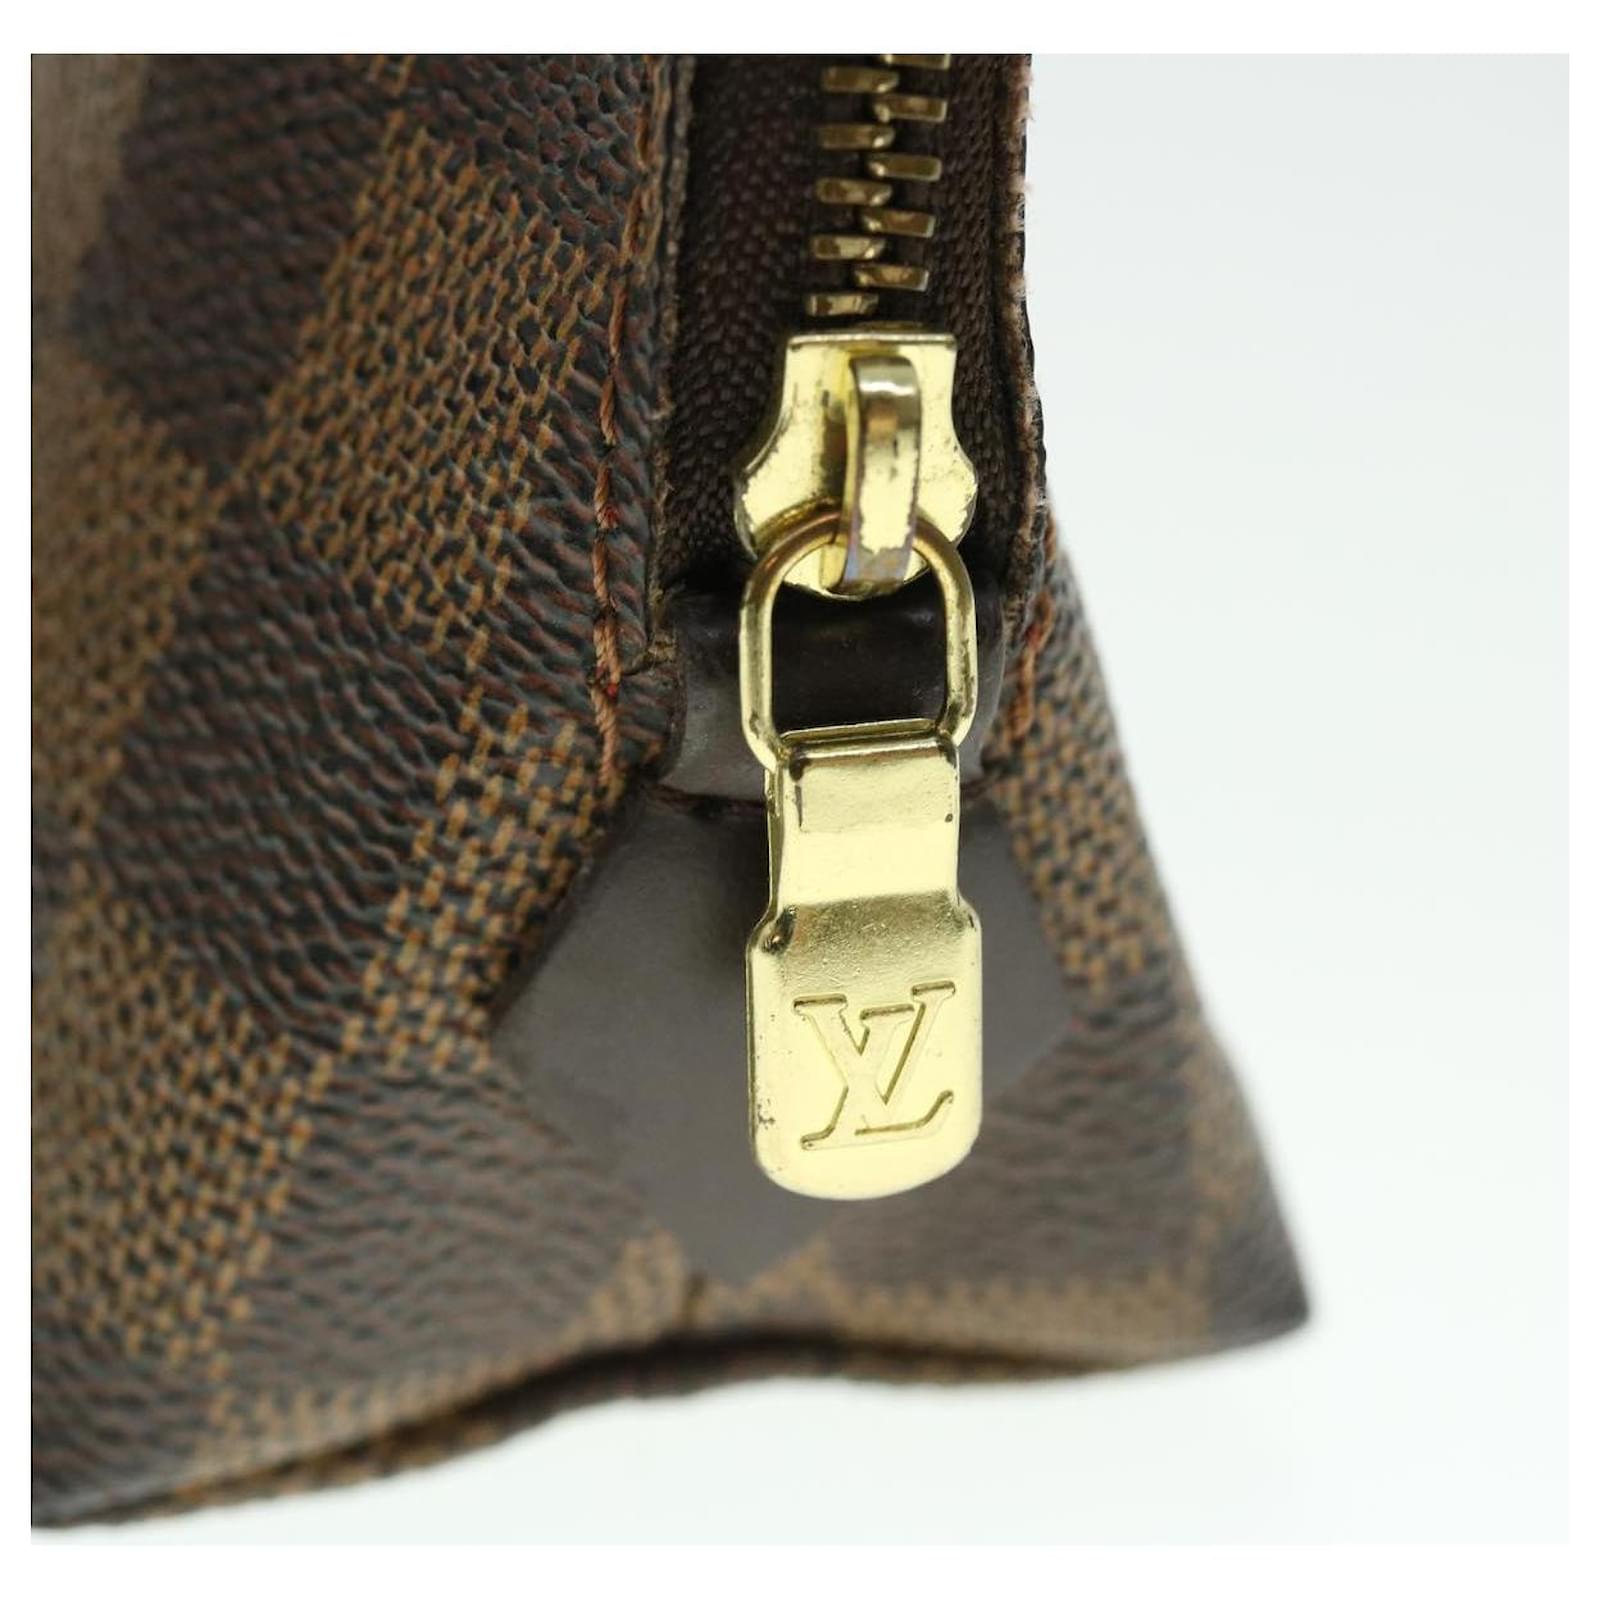 The Vendôme bag in PM & Mini sizes / Le sac Vendôme en tailles PM & Mini   Style and History intertwined: introducing the Vendôme bag in Mini and PM  (small) sizes.